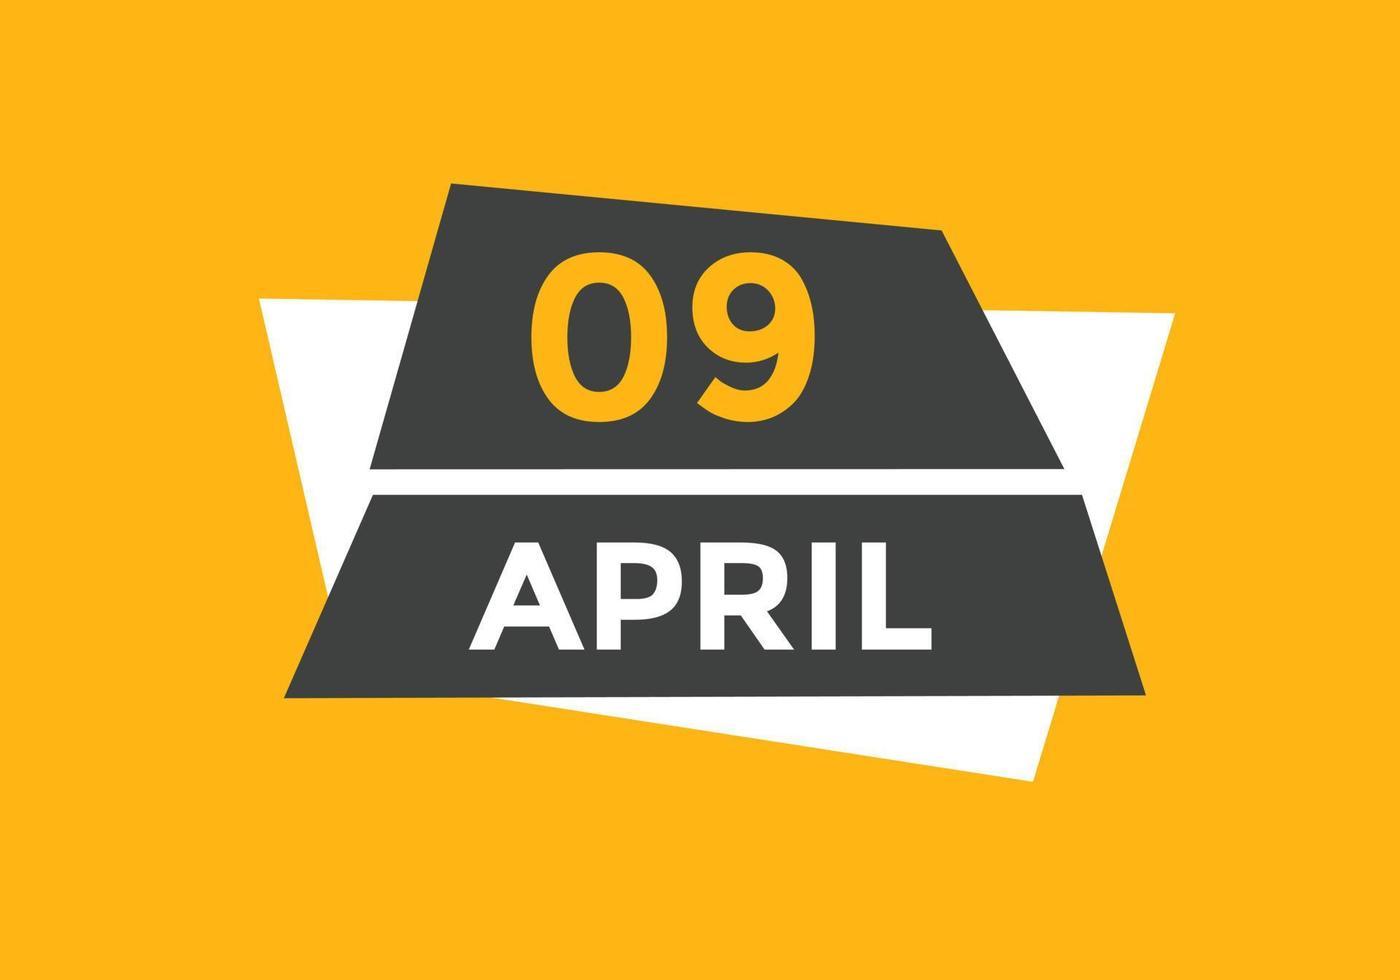 9. April Kalendererinnerung. 9. april tägliche kalendersymbolvorlage. Kalender 9. April Icon-Design-Vorlage. Vektor-Illustration vektor